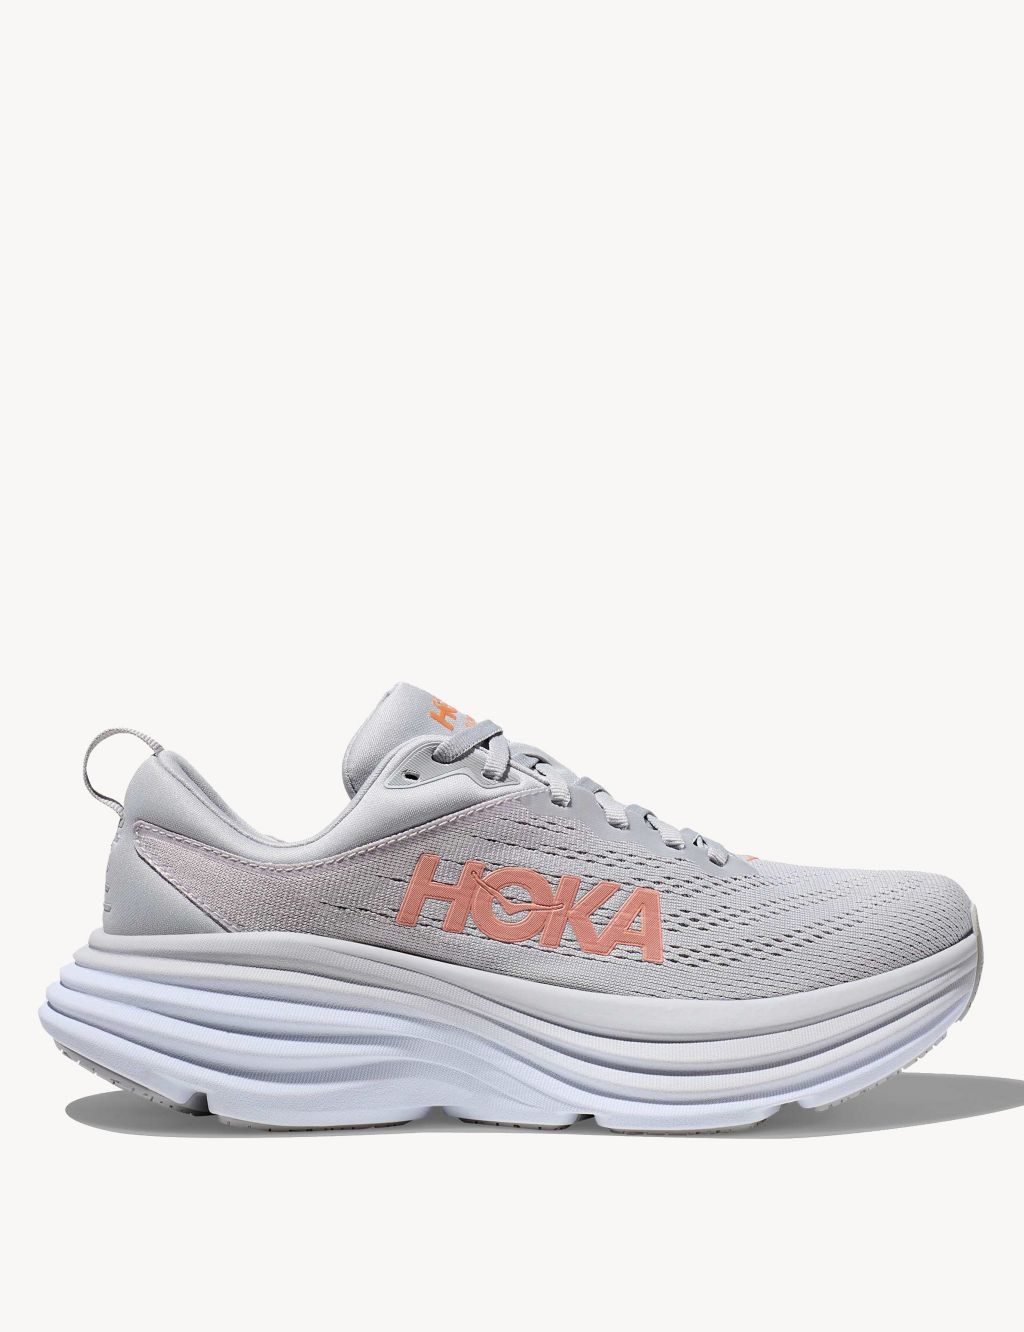 Hoka Running Shoes | M&S